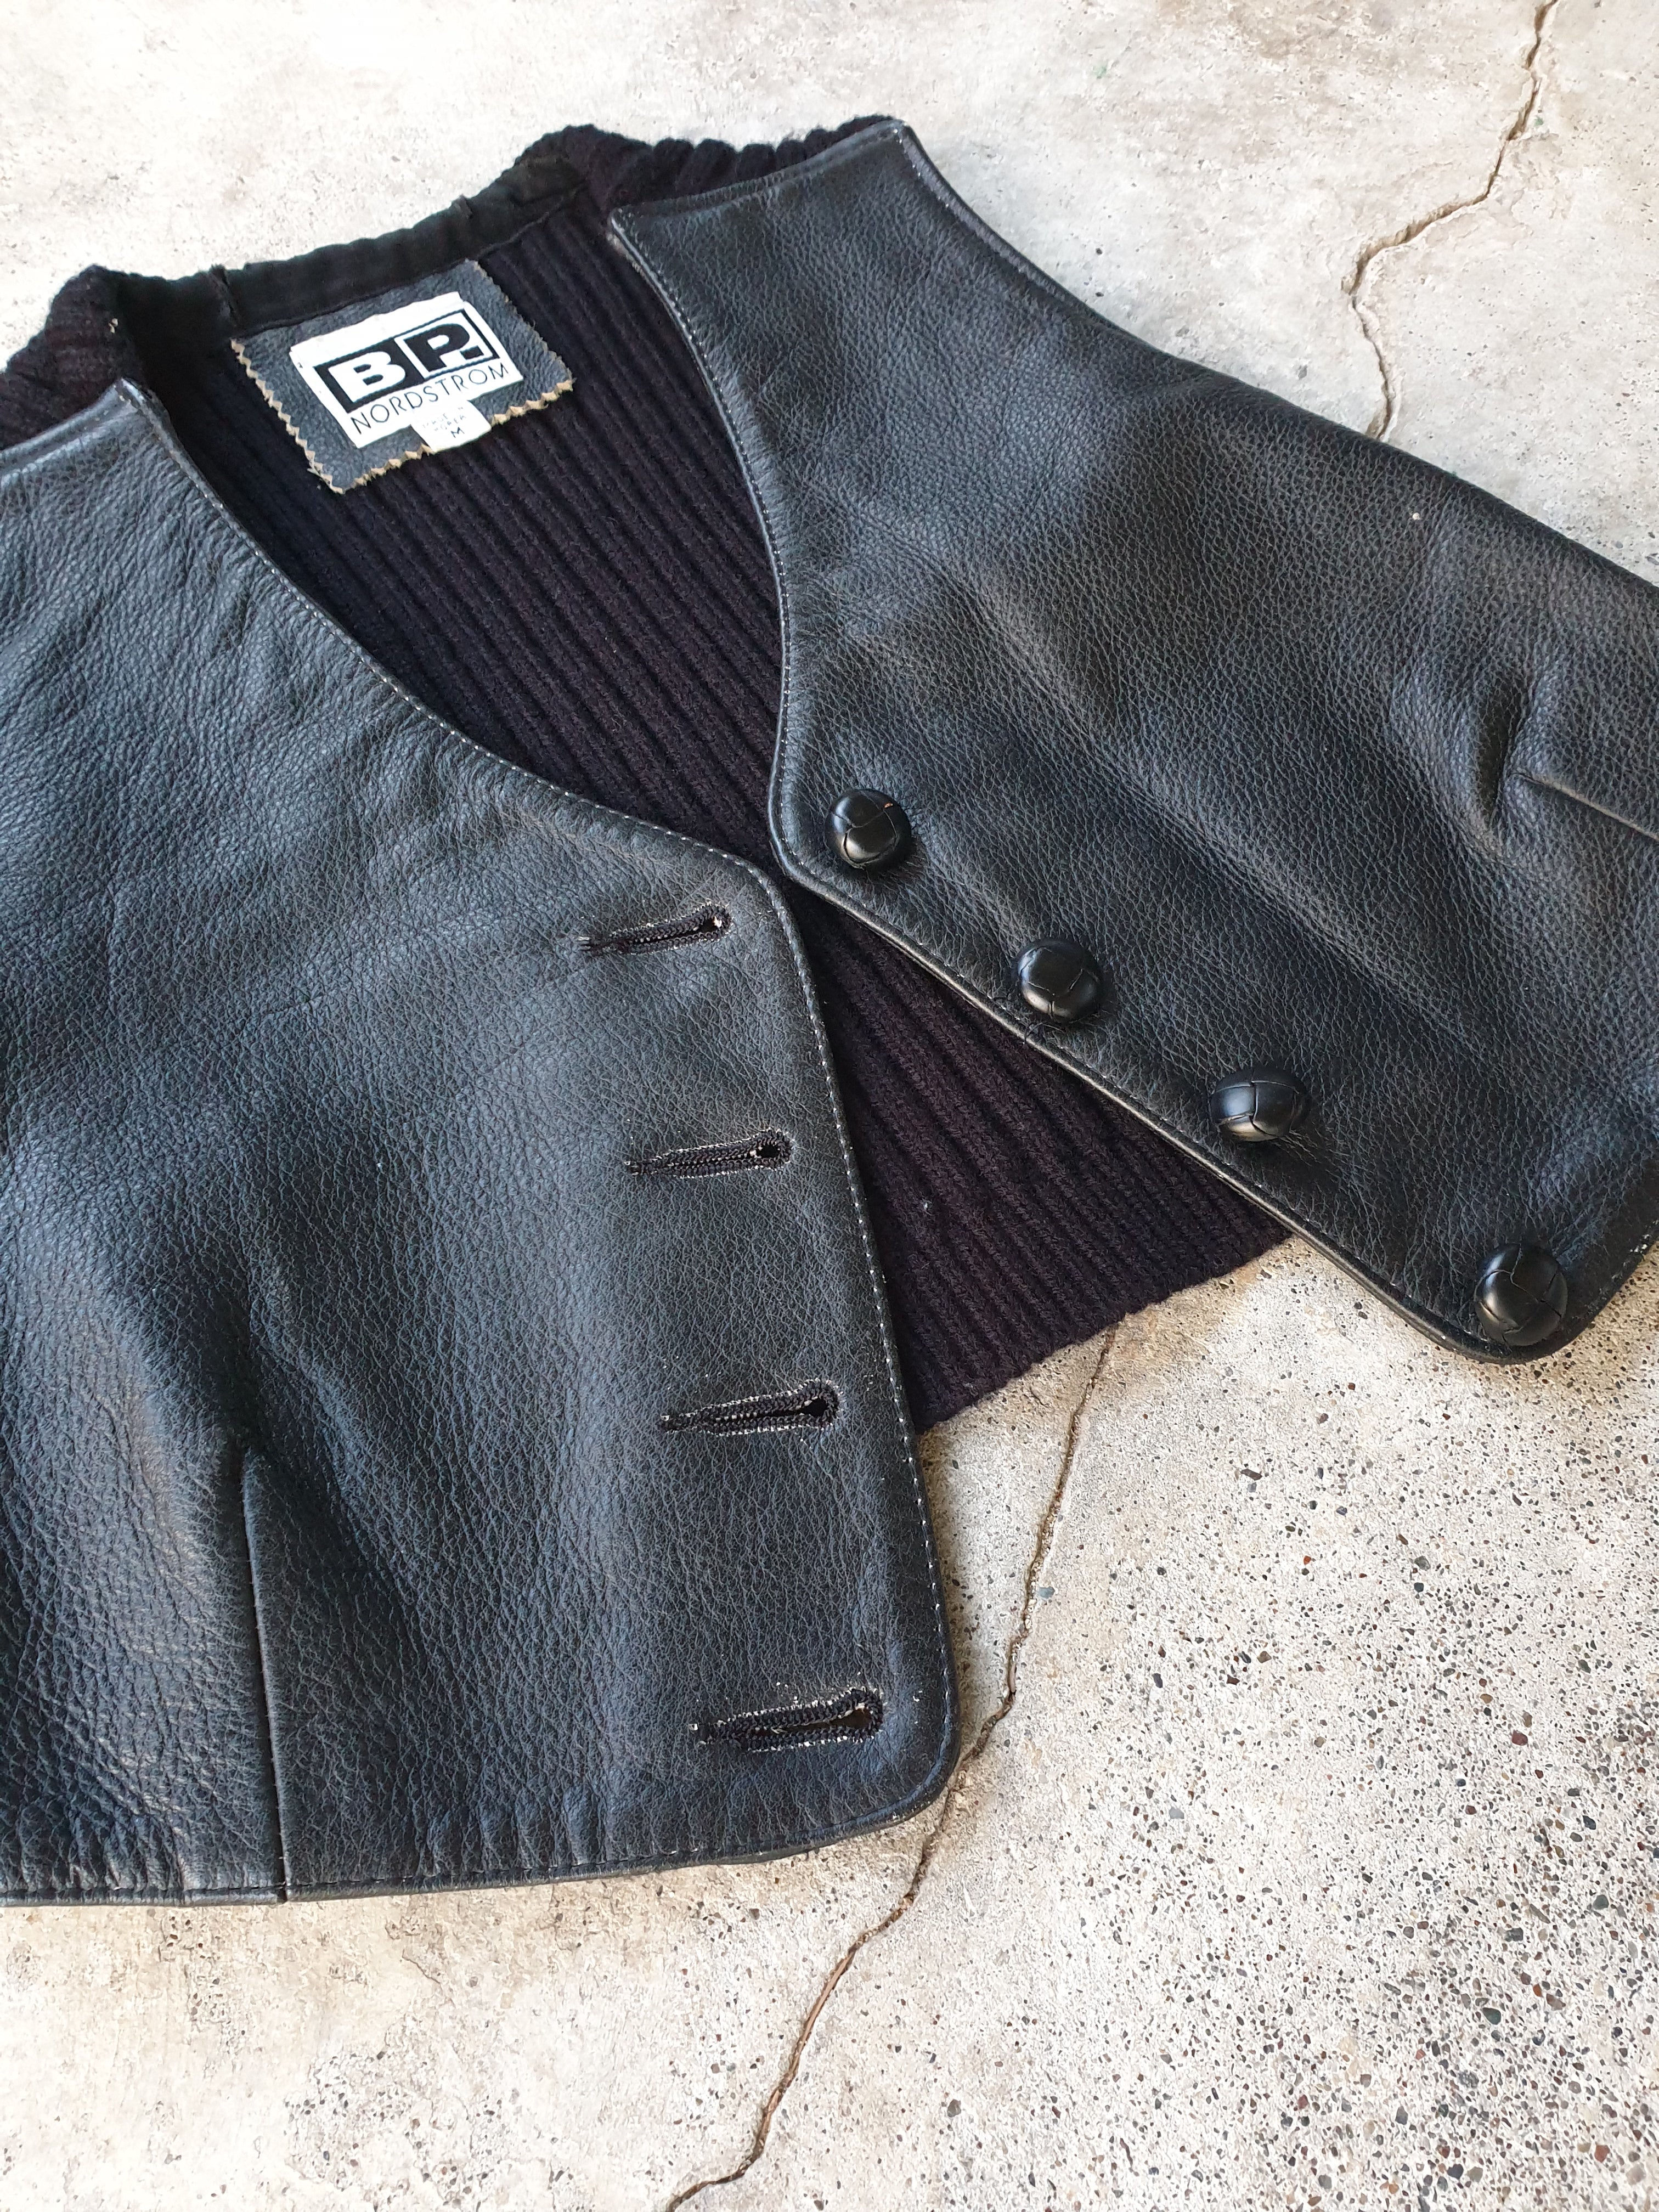 Vintage Black Leather 'BP Nordstrom' Cropped Vest